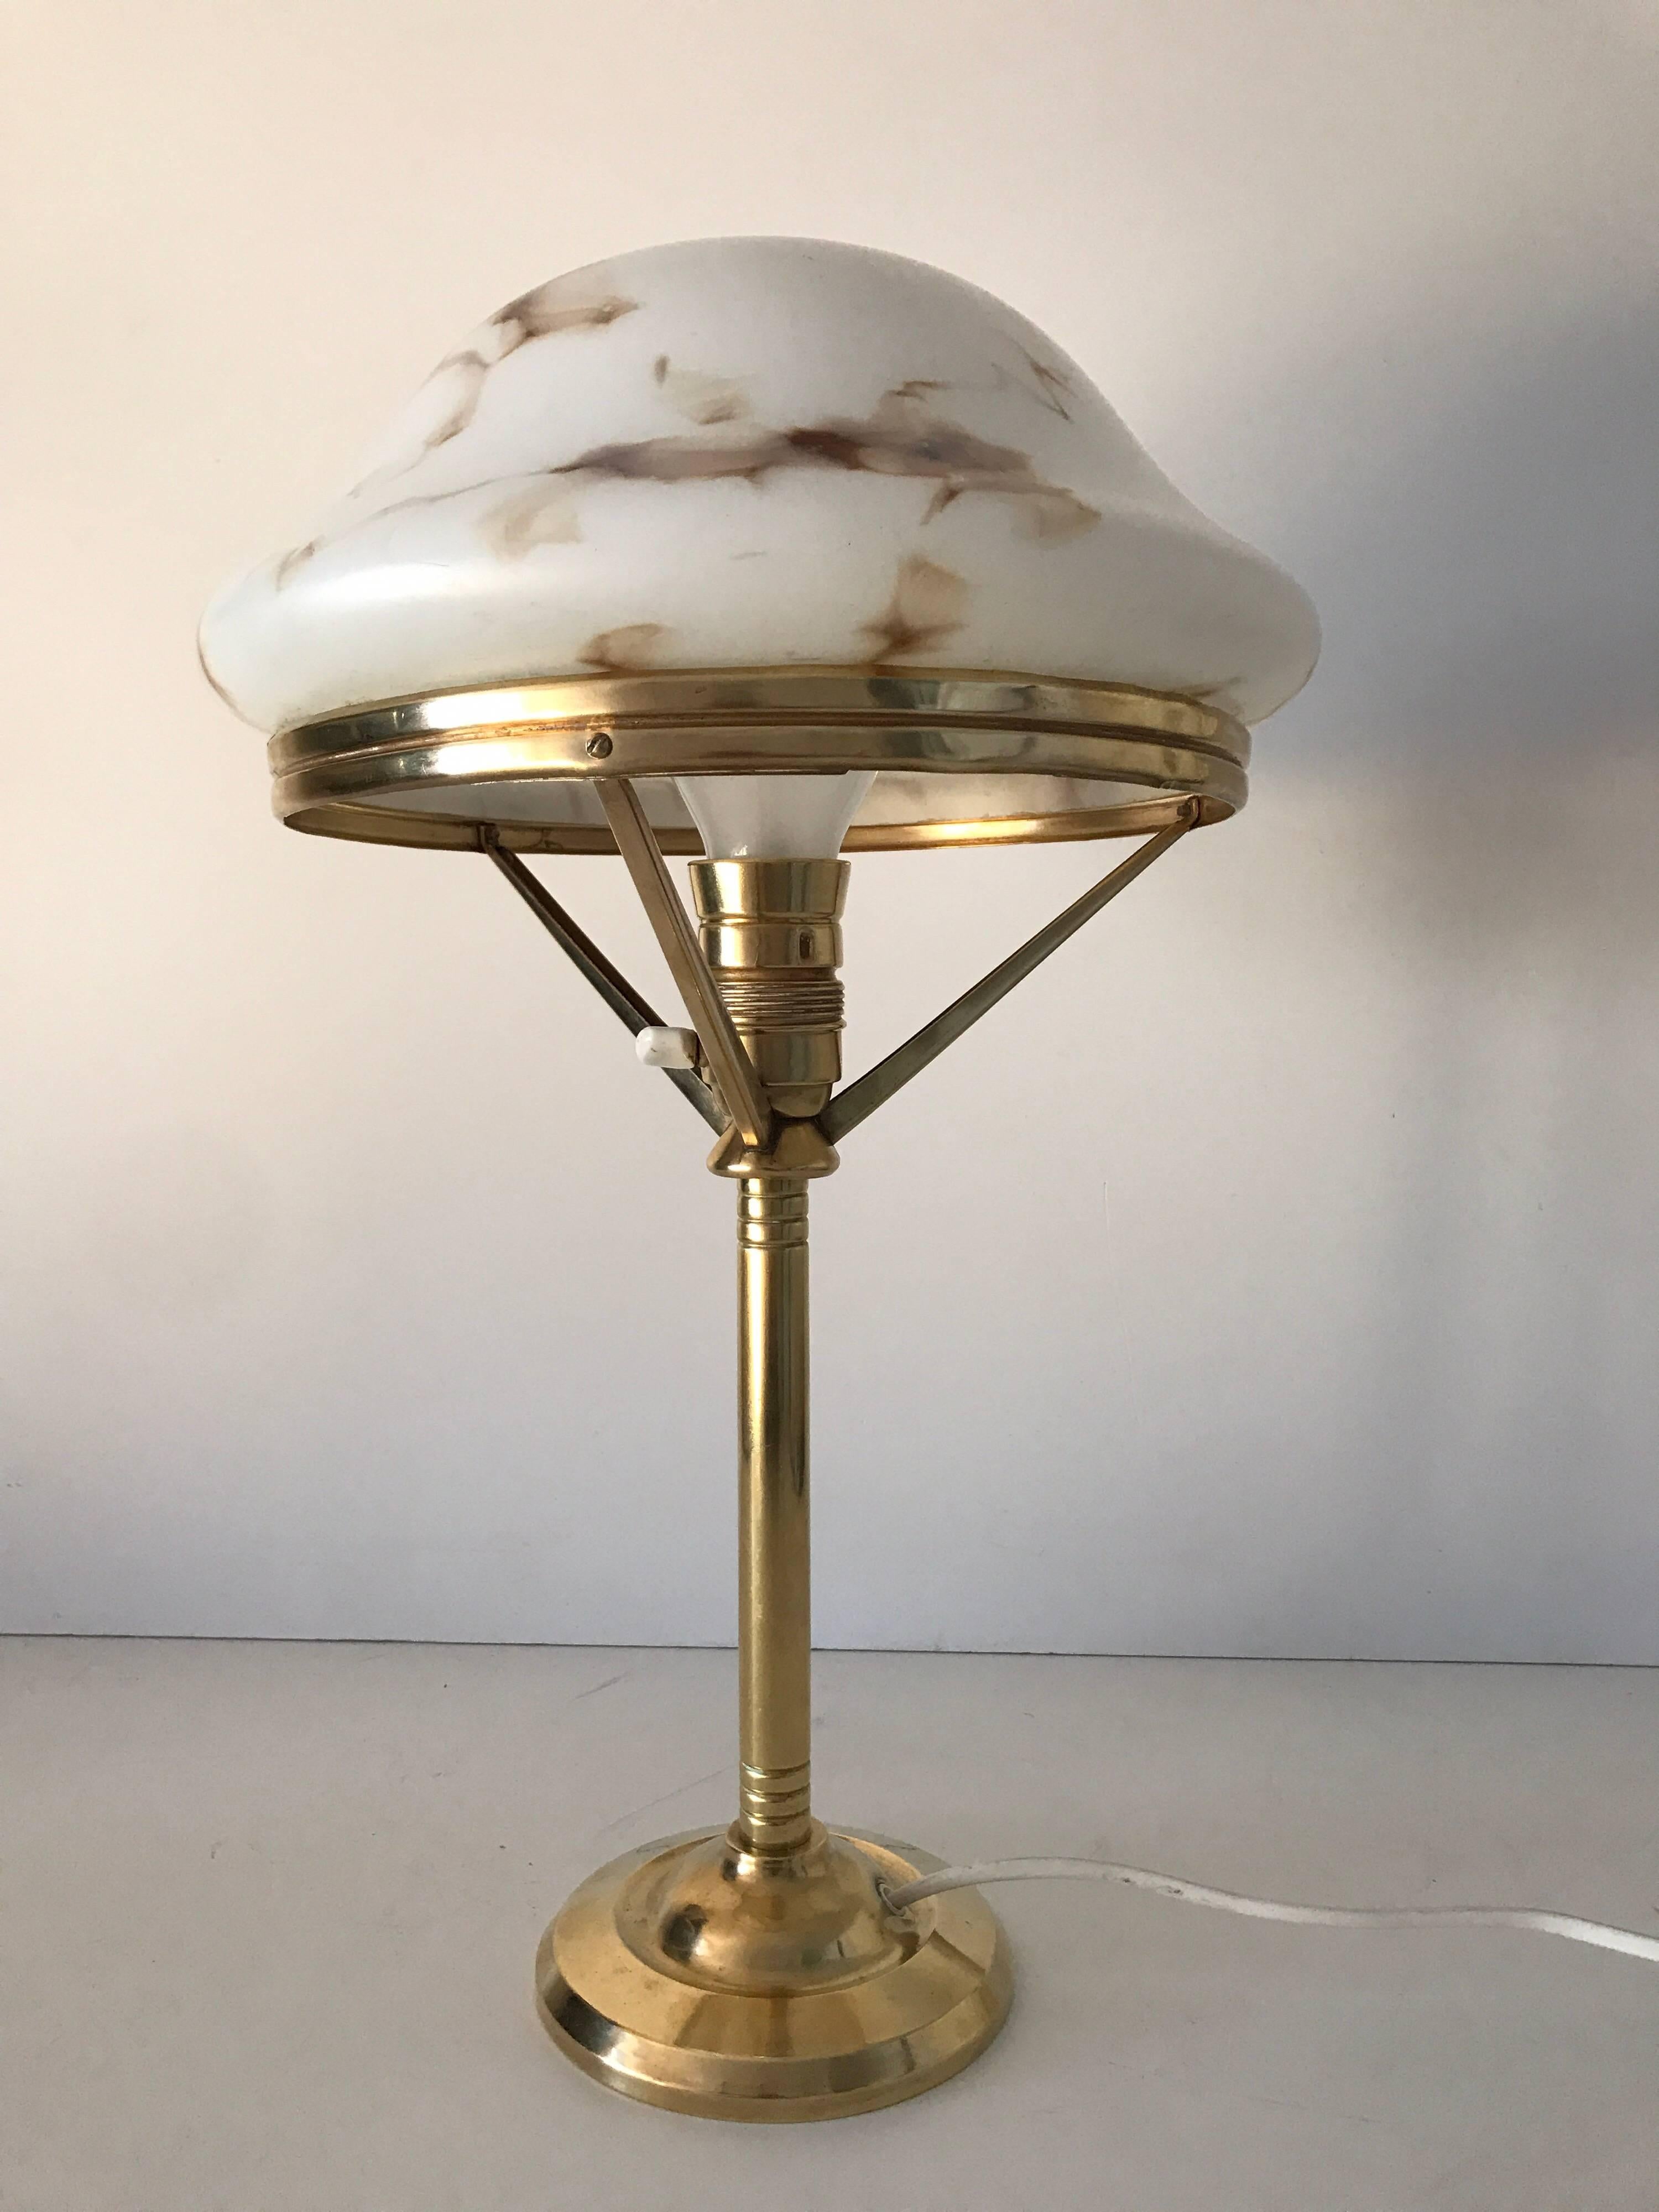 1920 Swedish Art Nouveau Jugendstil Brass and Art Glass Table Lamp For Sale 1